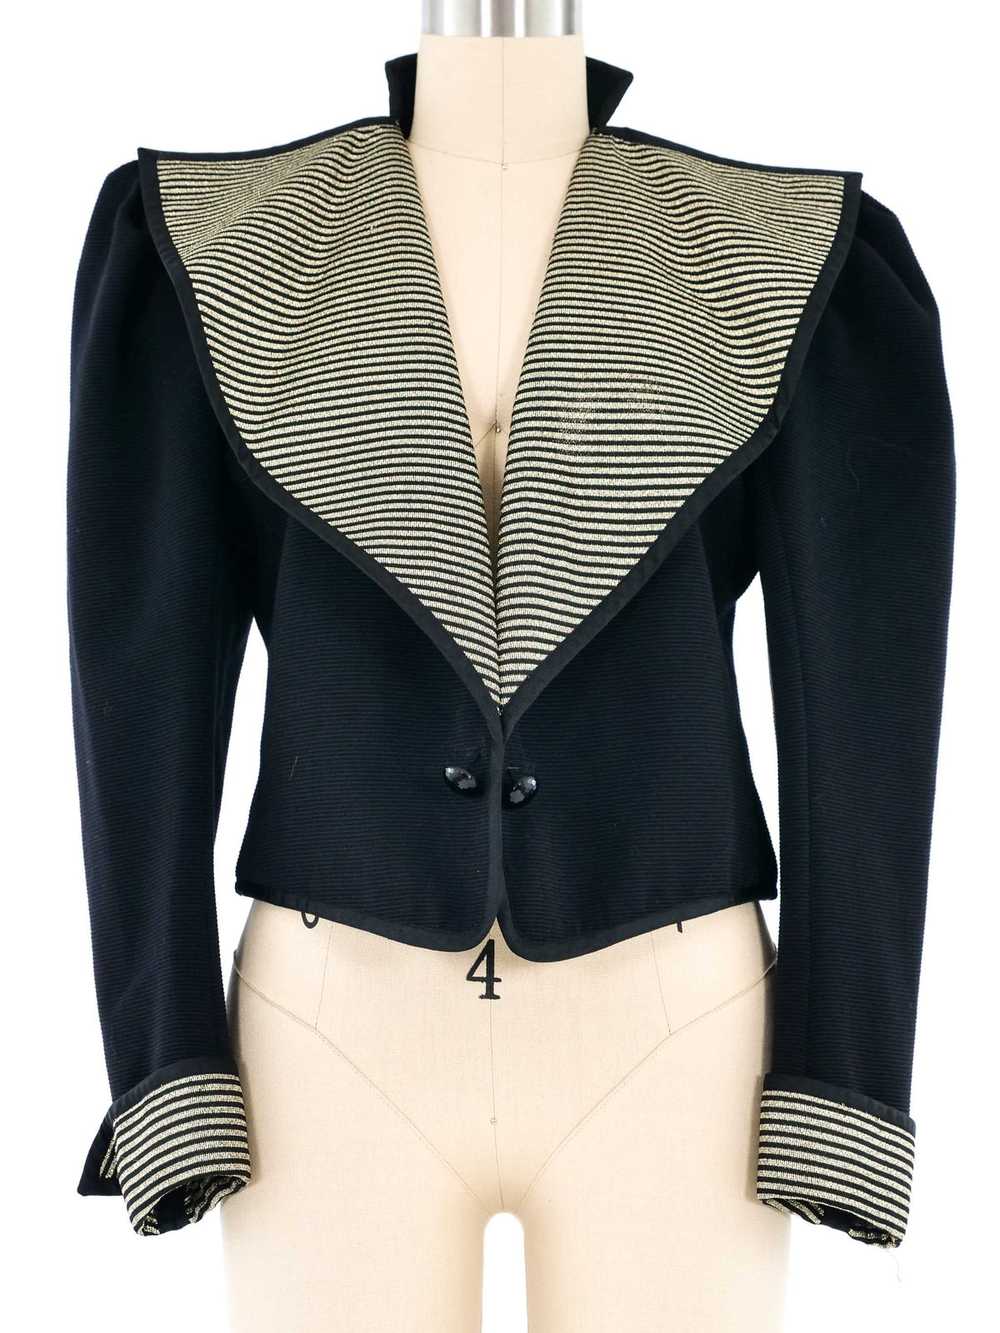 1981 Yves Saint Laurent Oversized Lapel Jacket - image 1